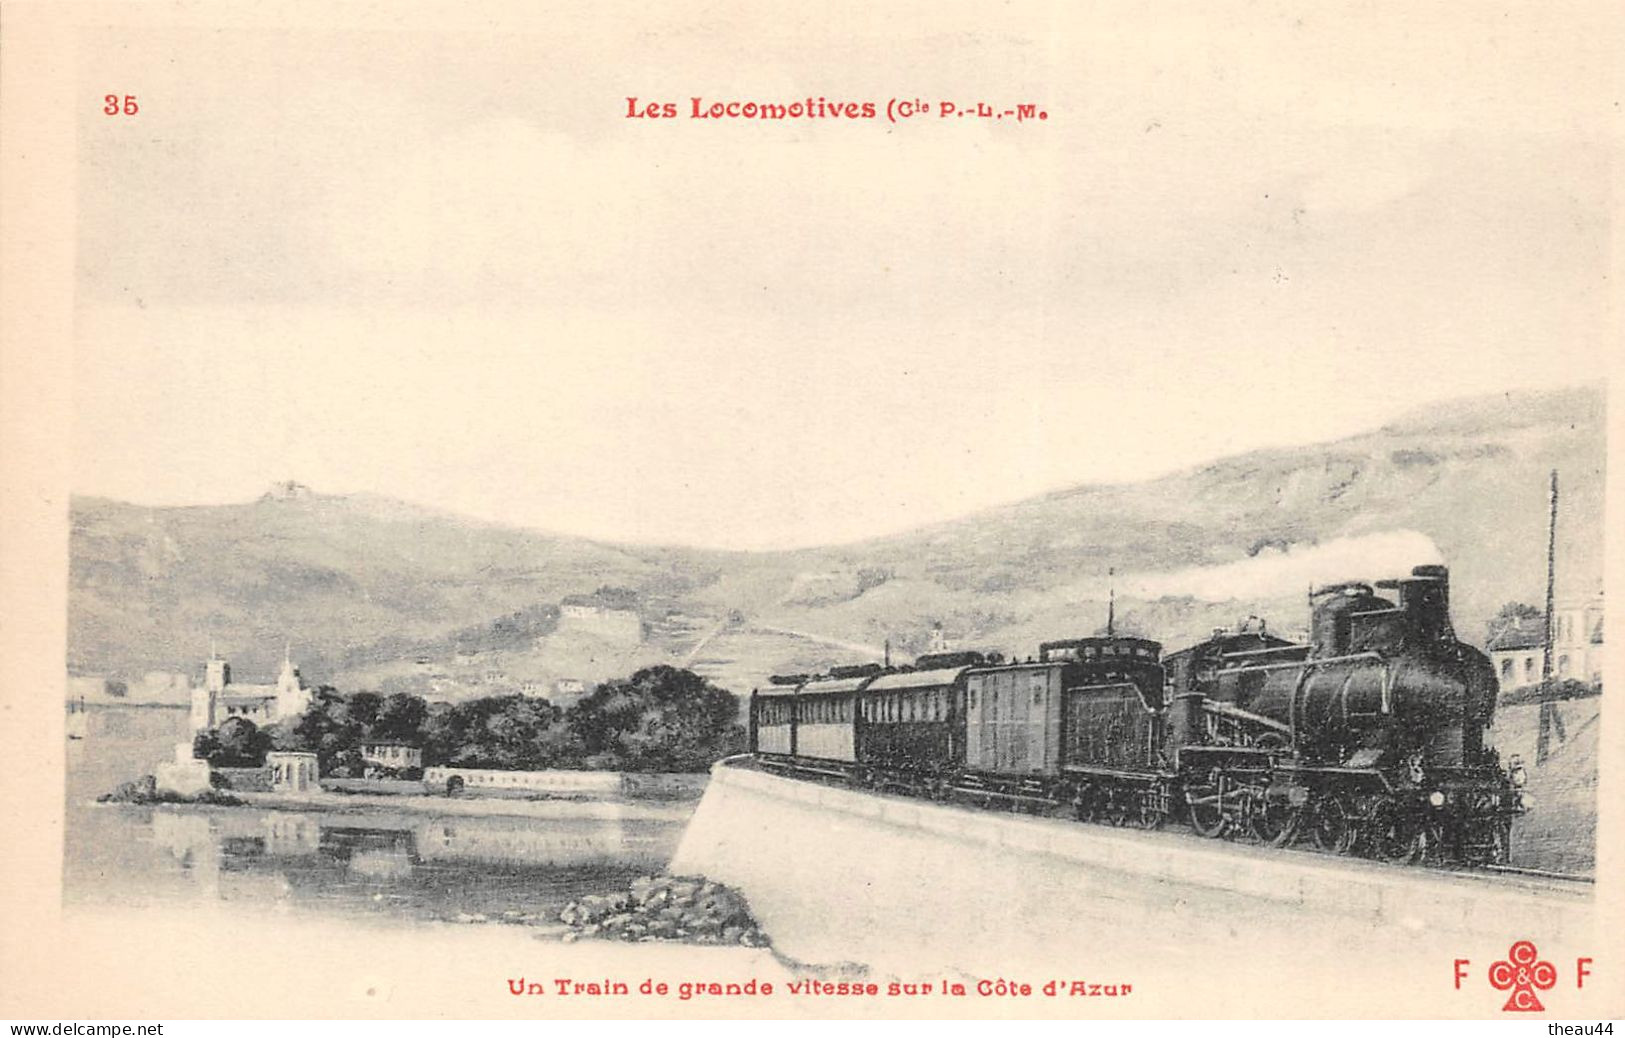 ¤¤   -  Lot de 9 Cartes  -  Locomotives des Chemin de Fer de l'Etat, Est, P.L.M........     -  Train    -   ¤¤